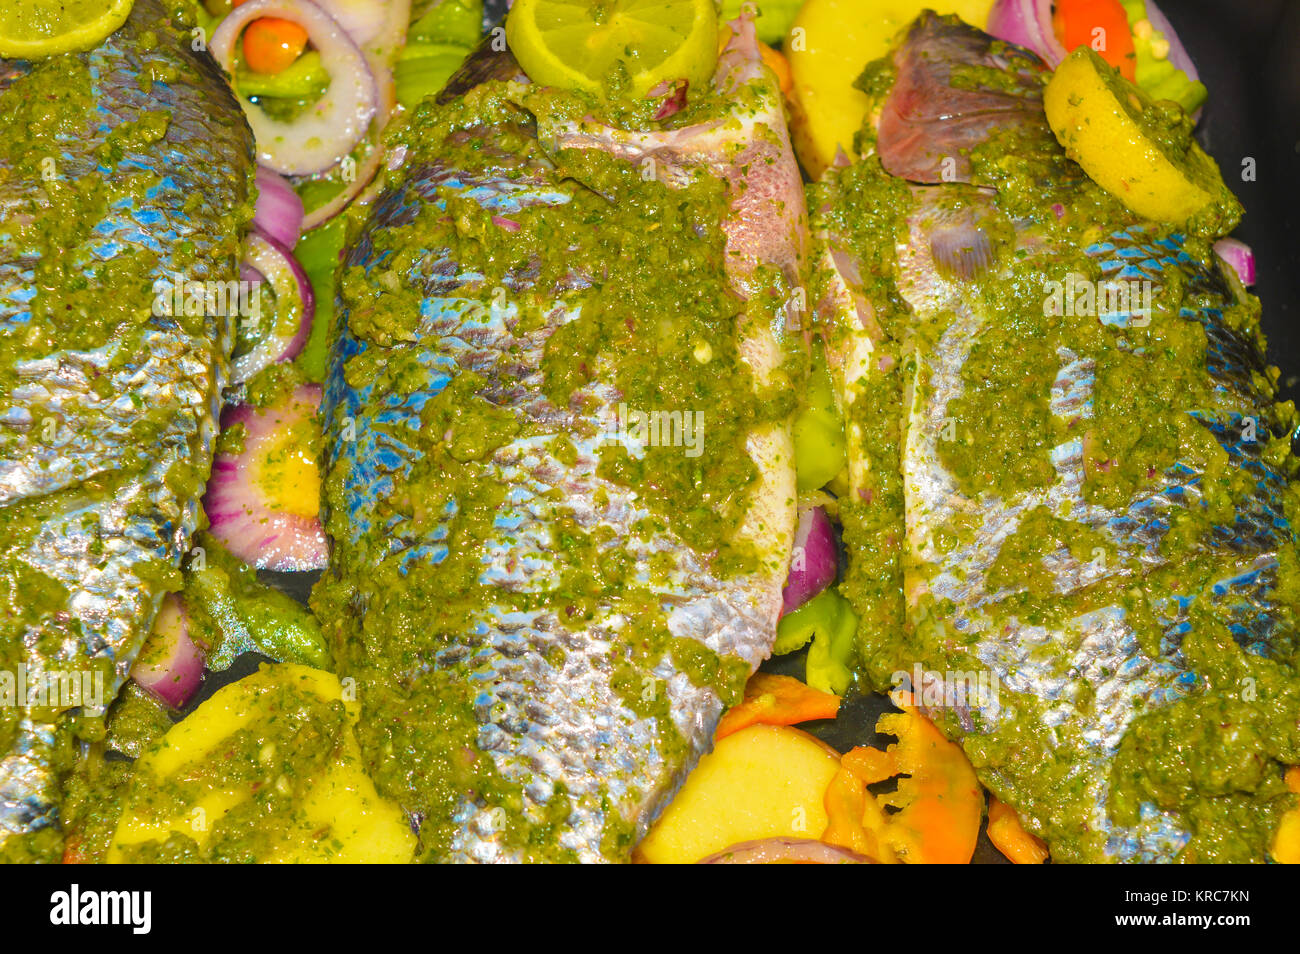 Frisch gekocht, gewürzt Tilapia-fisch Stockfoto